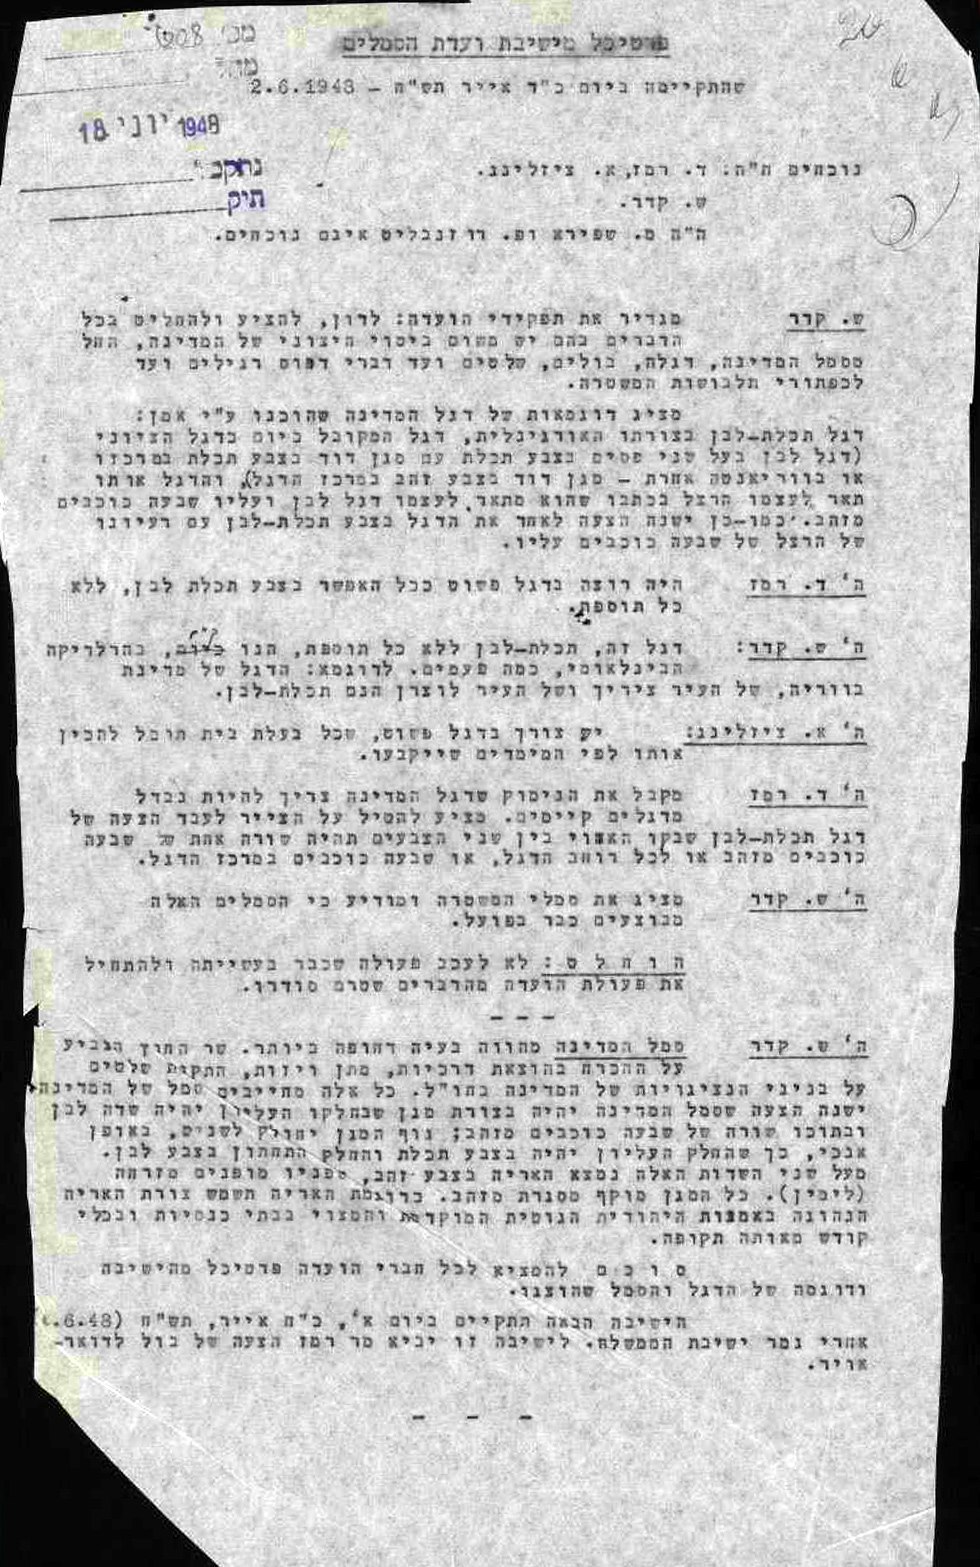 פרוטוקול ישיבת ועדת הסמלים קביעת סמל ודגל מדינת ישראל מ-2.6.1948 (באדיבות ארכיון המדינה)